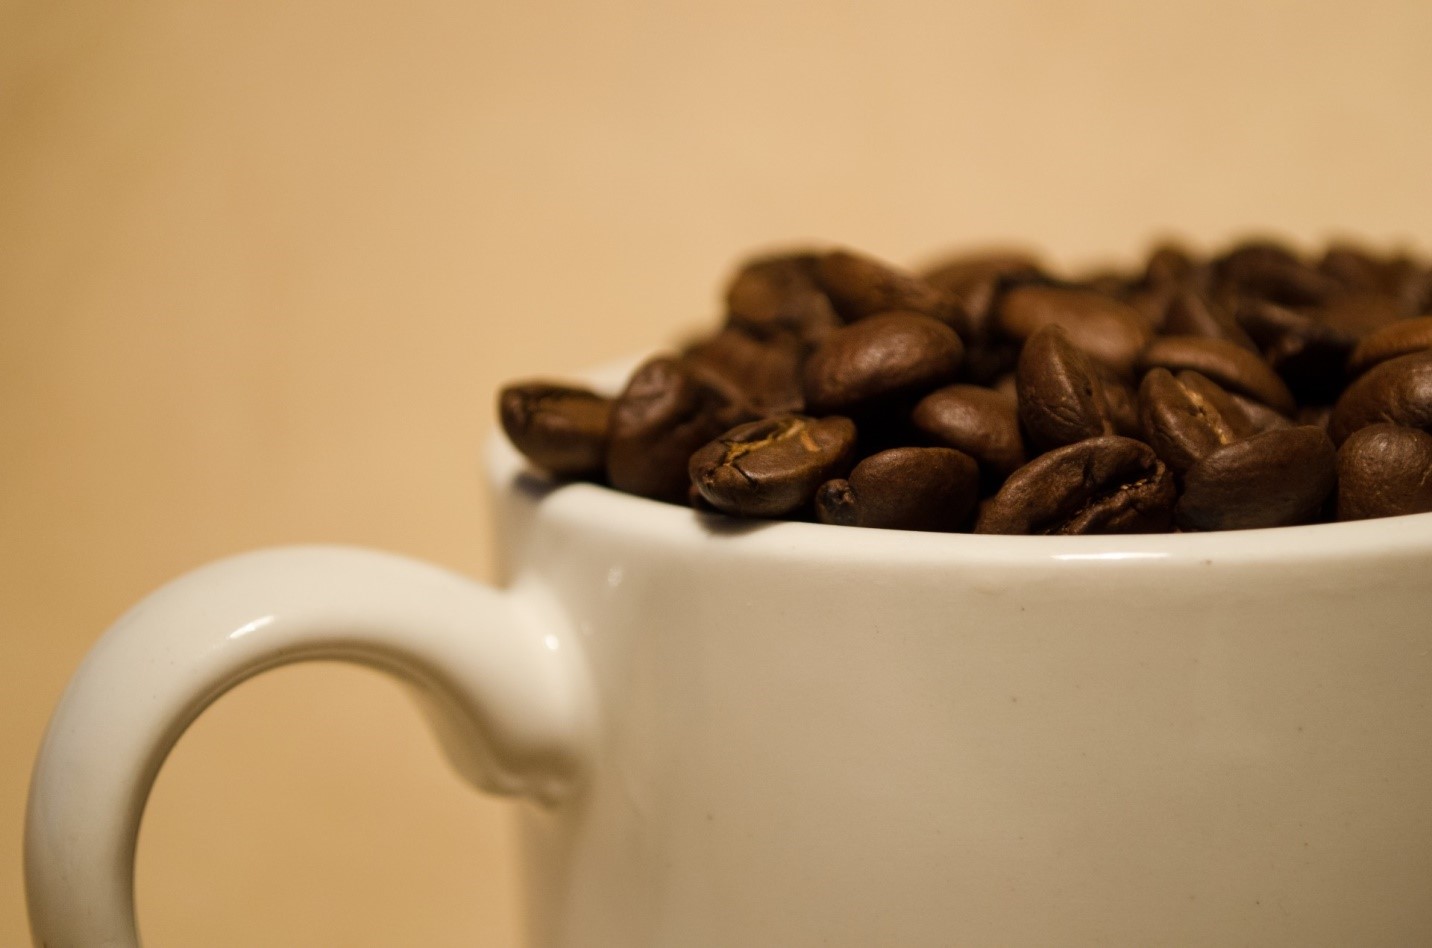 خرید قهوه فله به صرفه تر است یا بسته بندی شده؟ | لیست قیمت